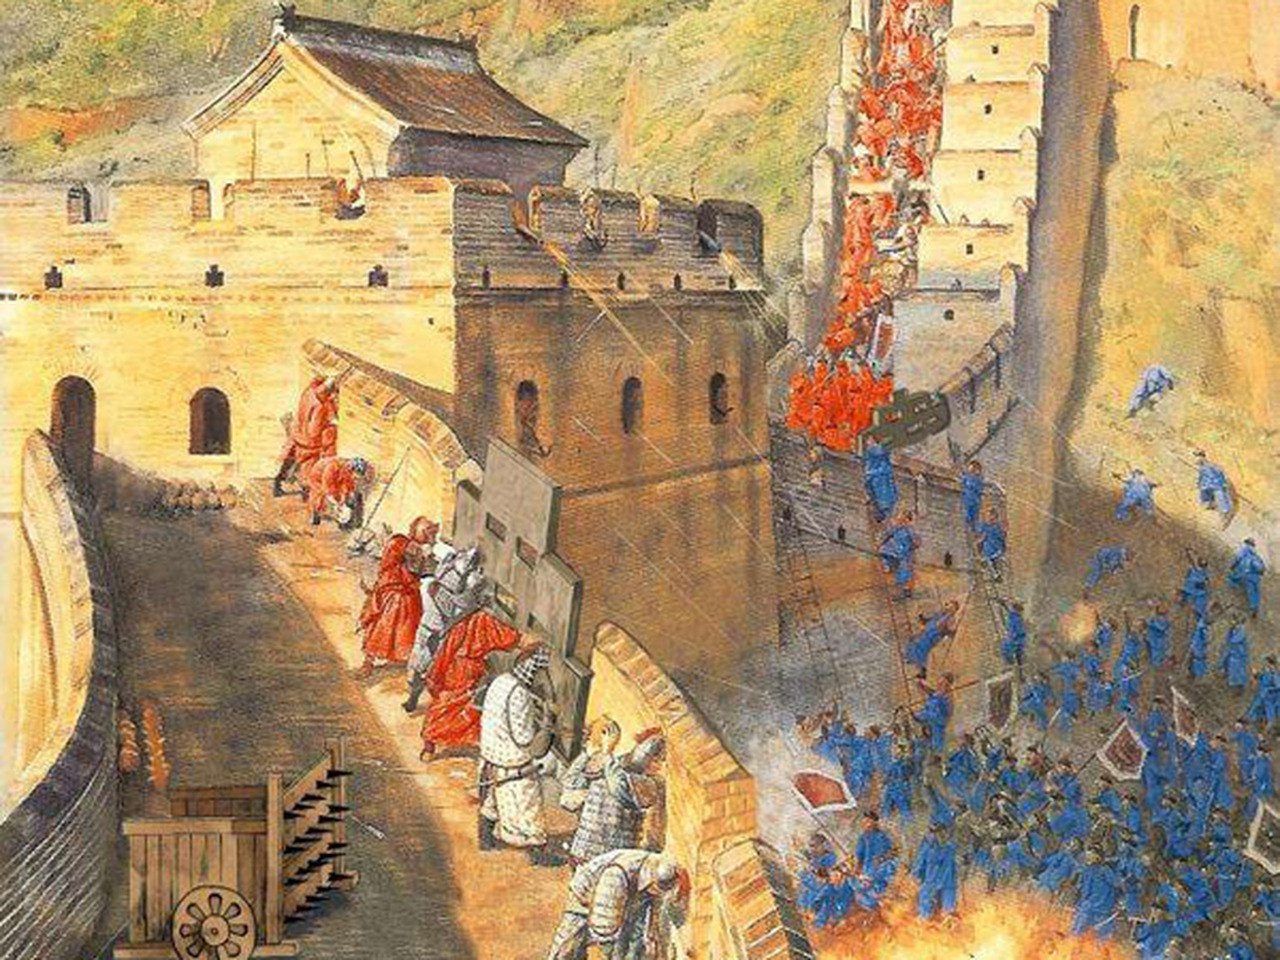 Chinese Wall: O que é e como implementá-lo? 